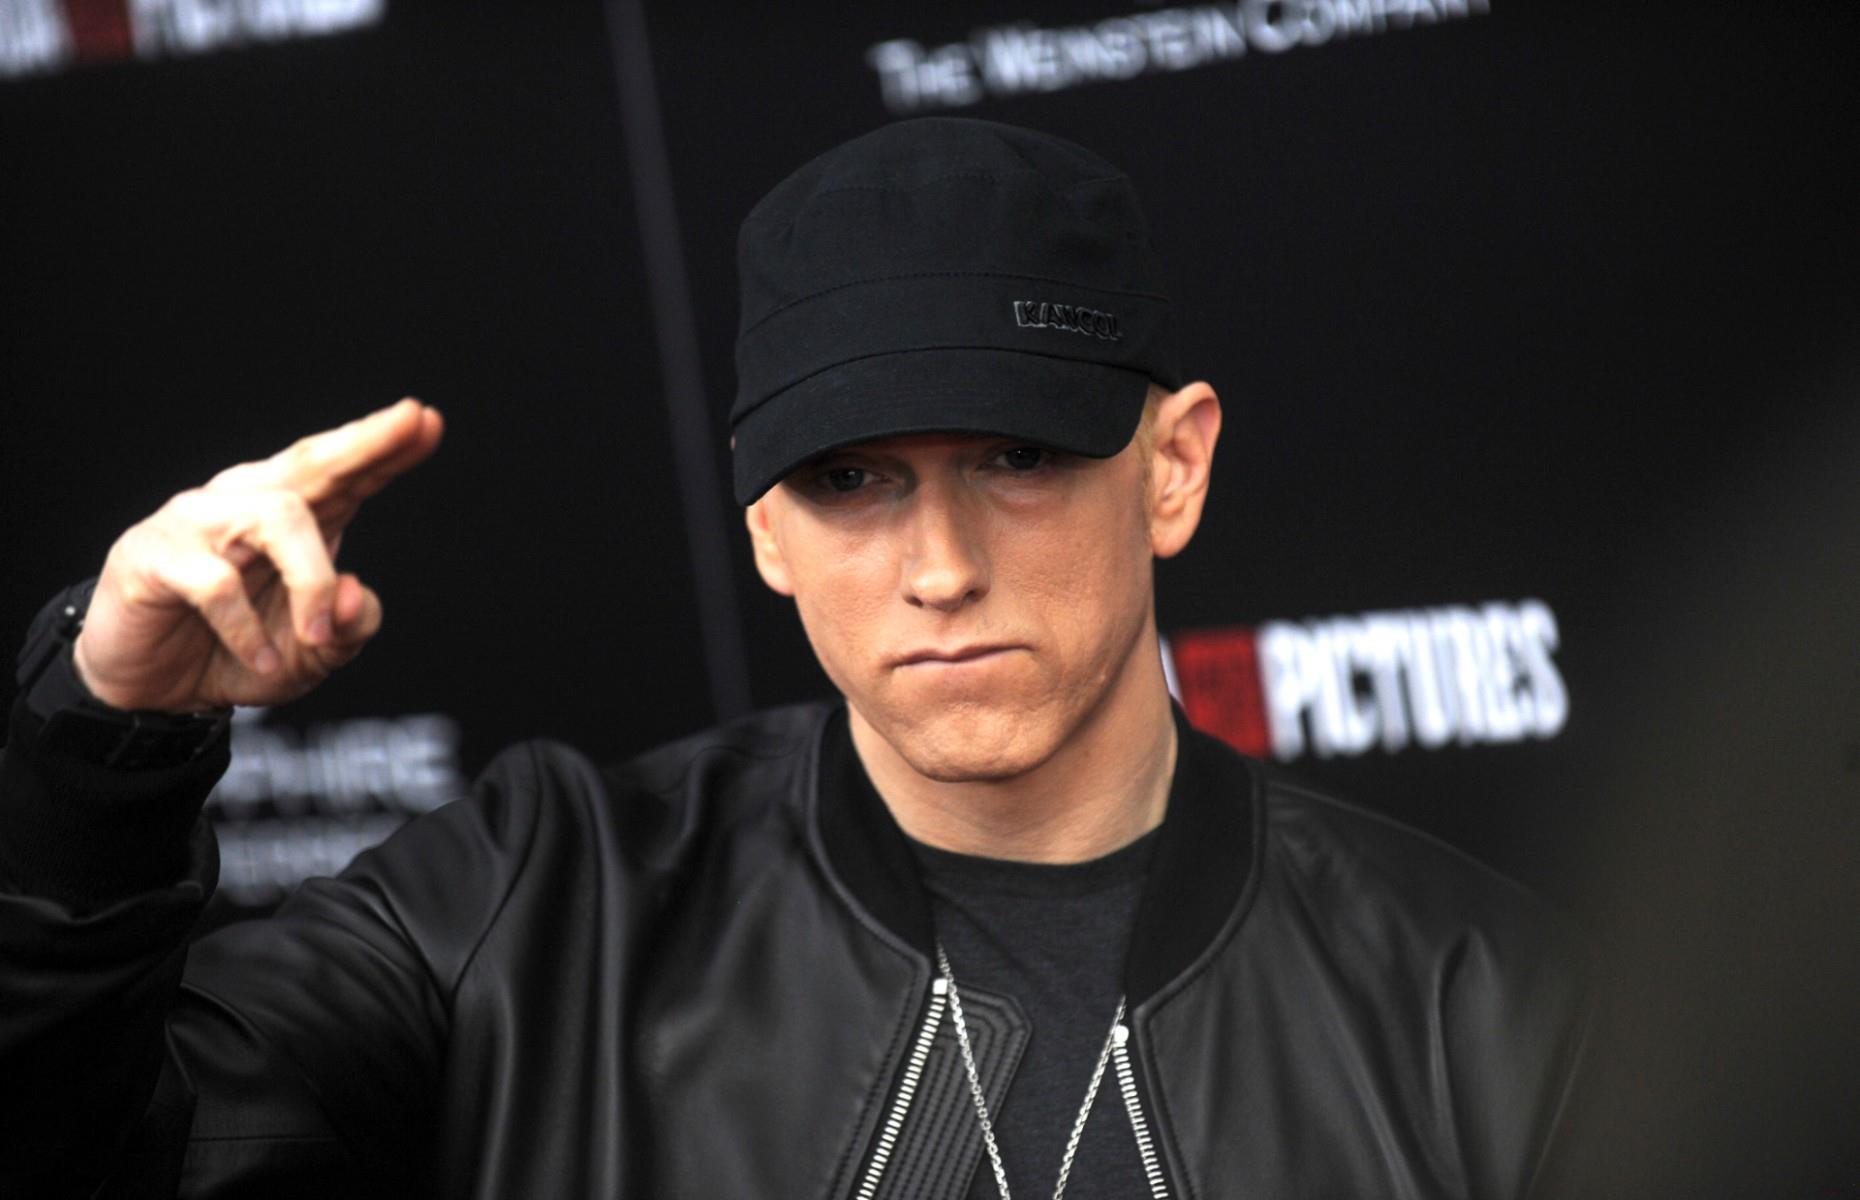 Eminem is signed